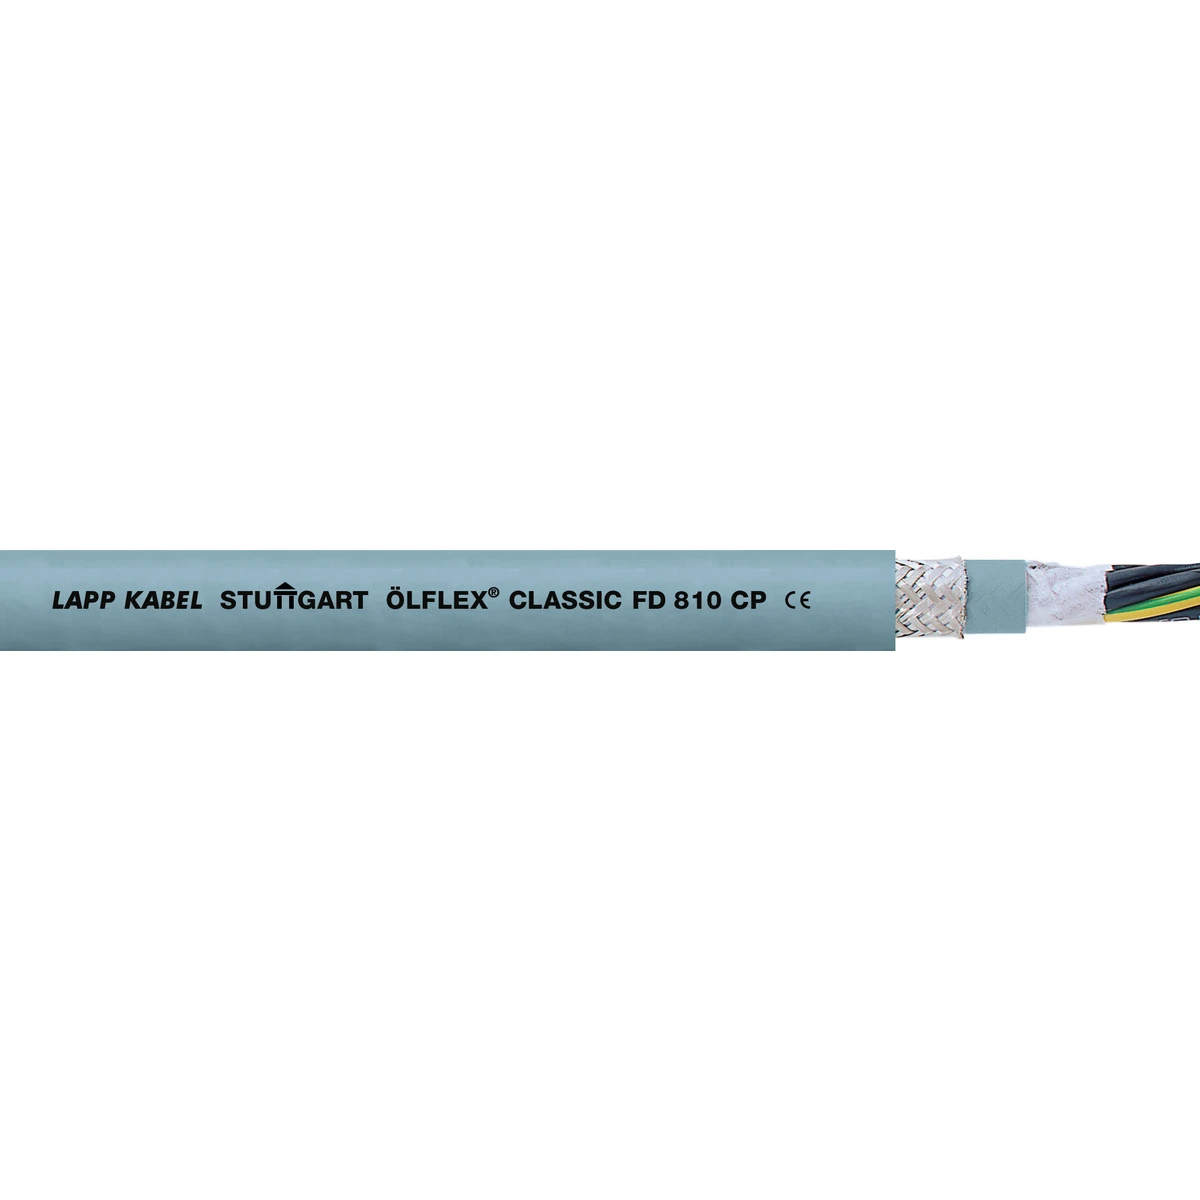 Lapp Voedingskabel < 1 kV, voor beweegbare toepassingen ÖLFLEX CLASSIC FD 810 CP